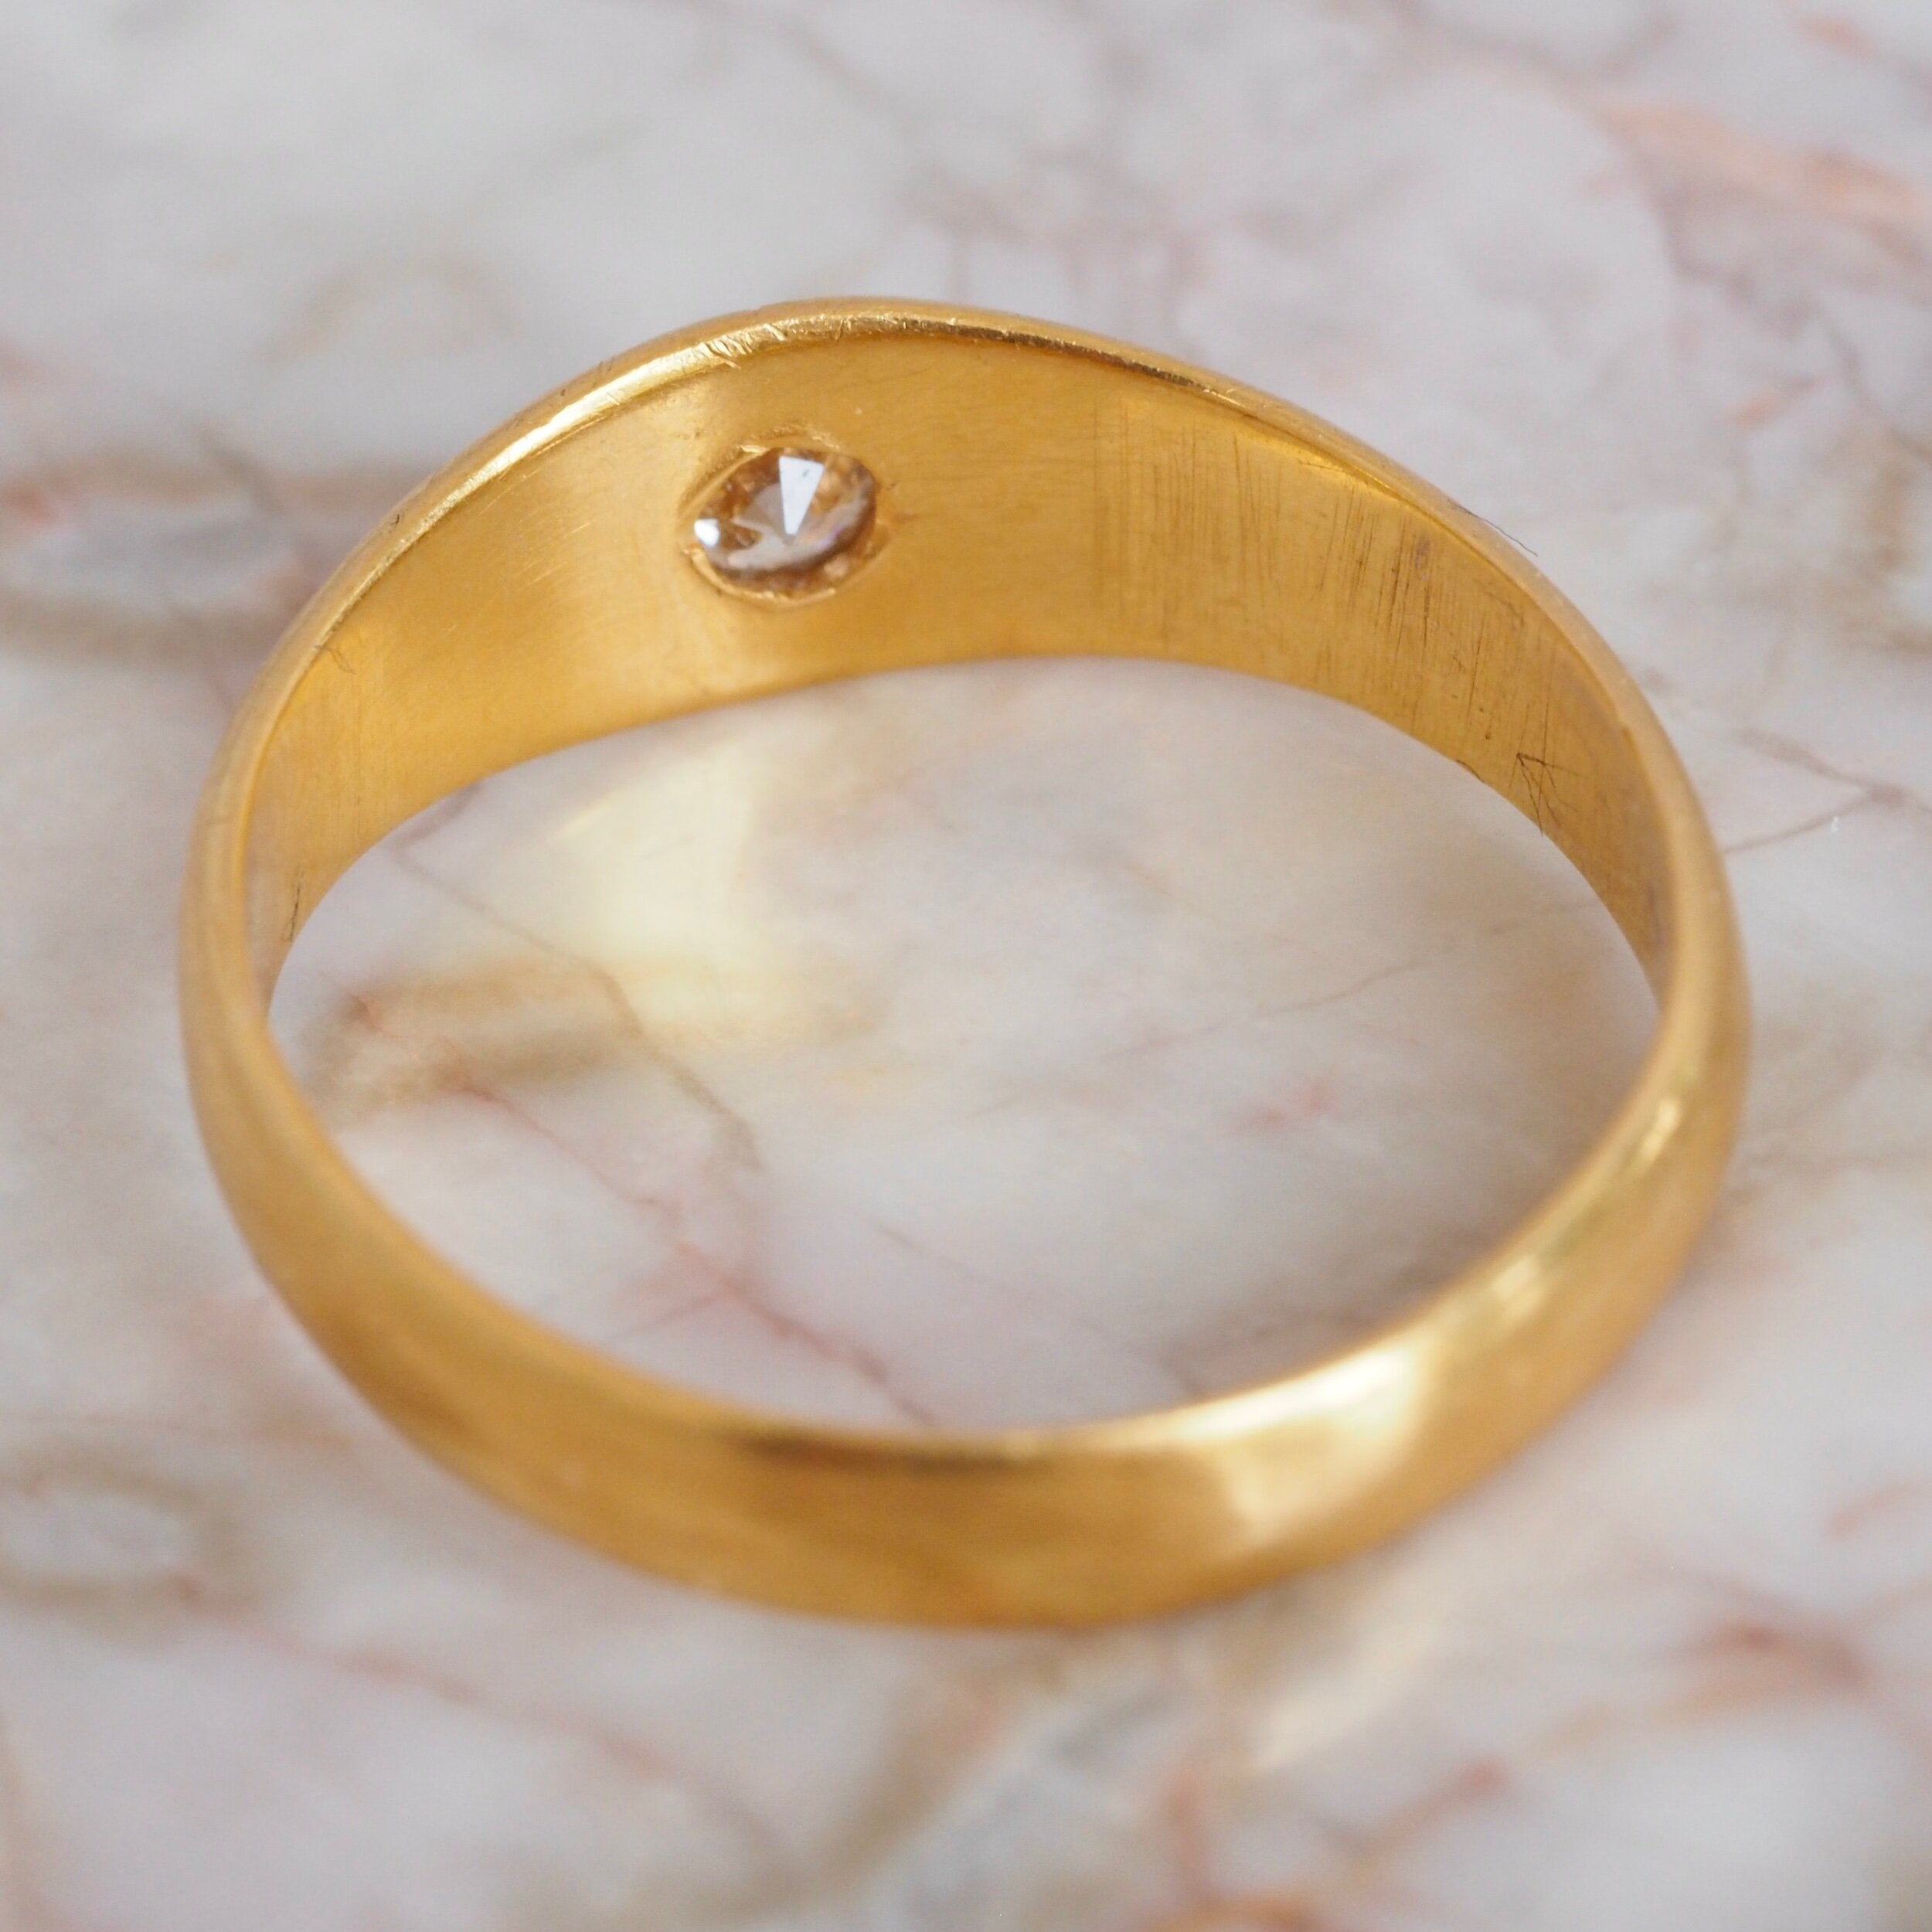 Antique English 22k Gold Old European Cut Flush Set Diamond Starburst Ring